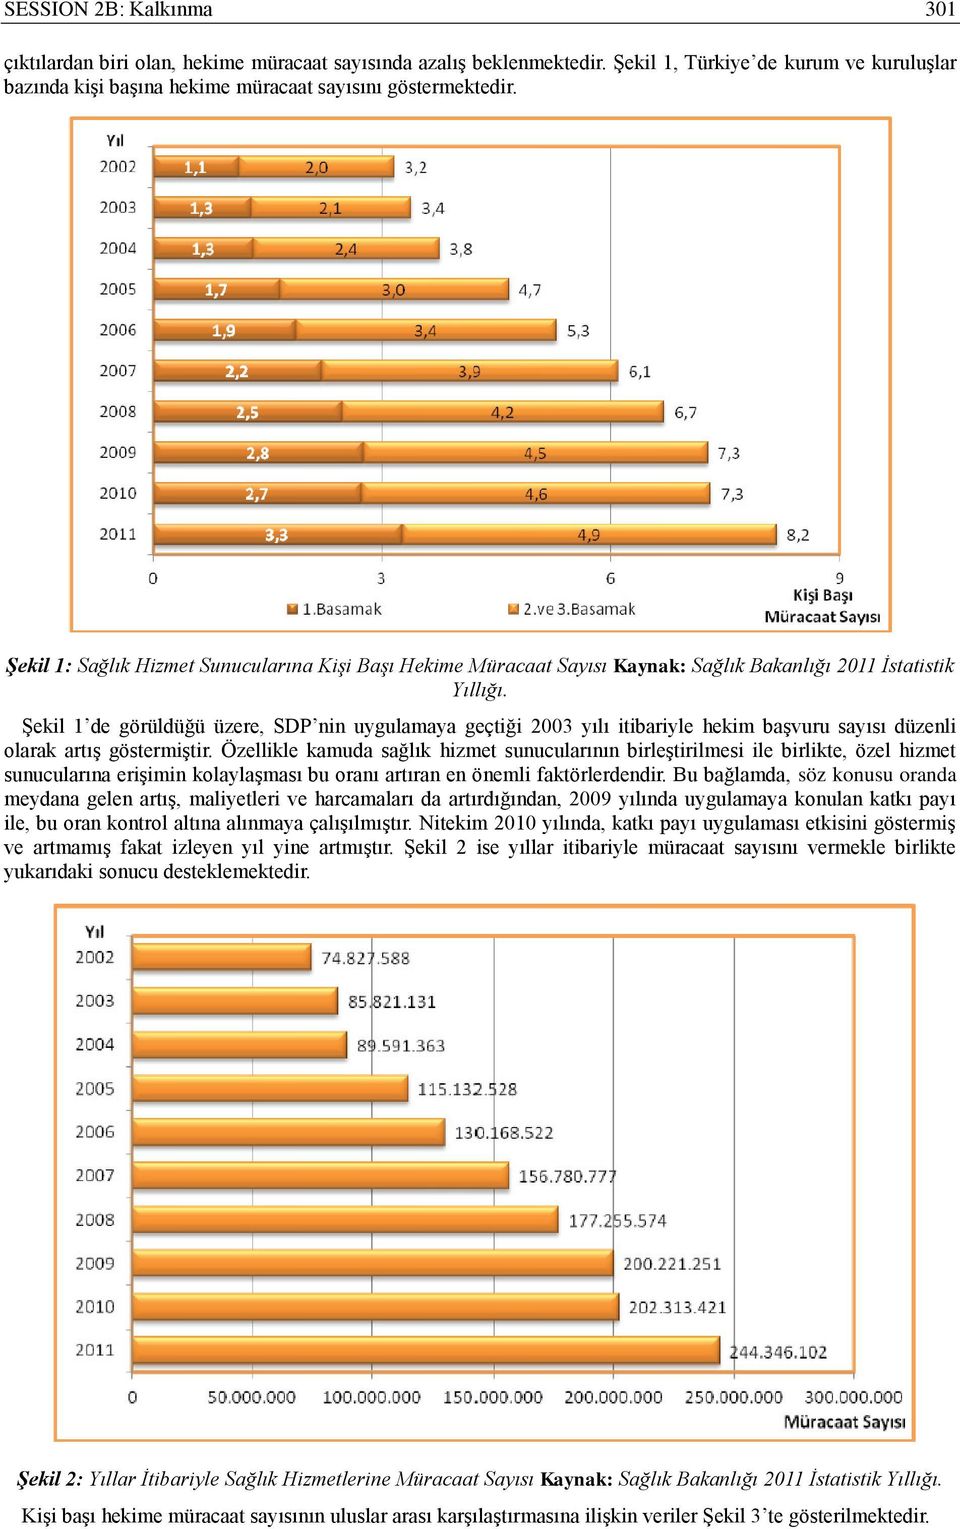 Şekil 1 de görüldüğü üzere, SDP nin uygulamaya geçtiği 2003 yılı itibariyle hekim başvuru sayısı düzenli olarak artış göstermiştir.